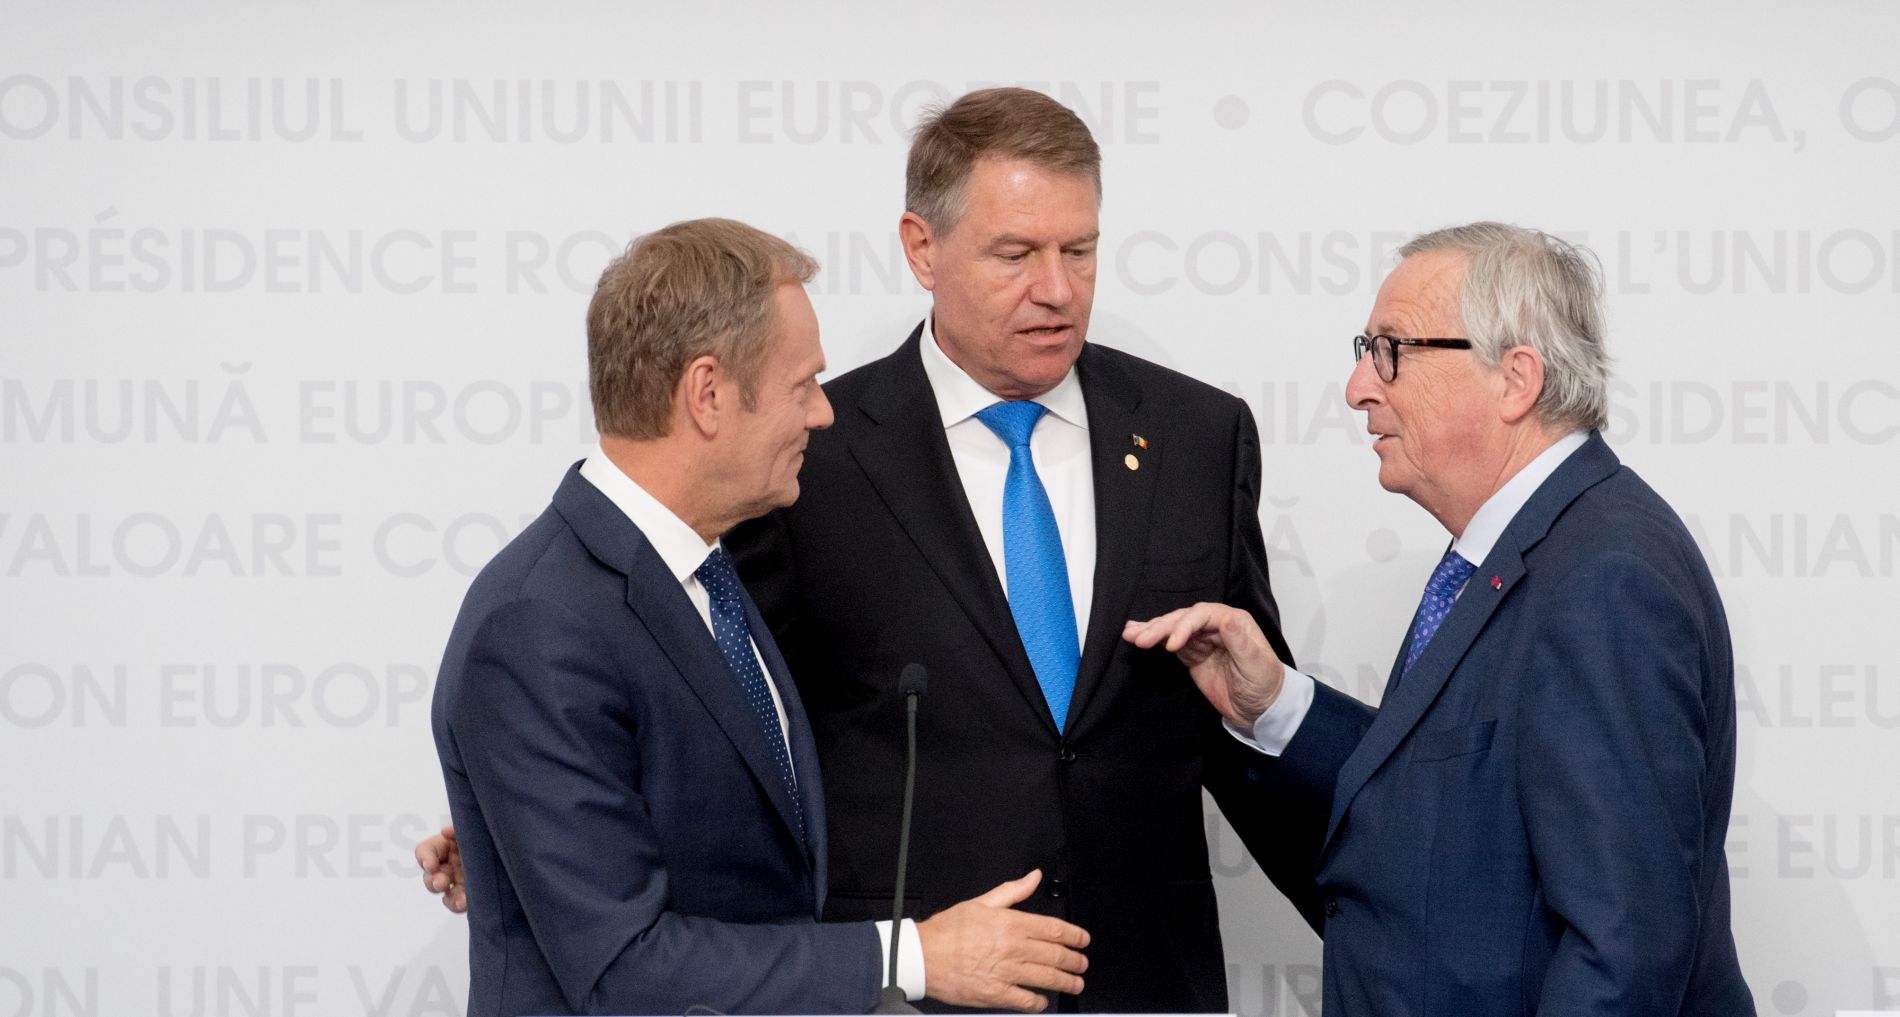 Tusk najavio brzo i učinkovito imenovanje čelnika europskih institucija, Komisije